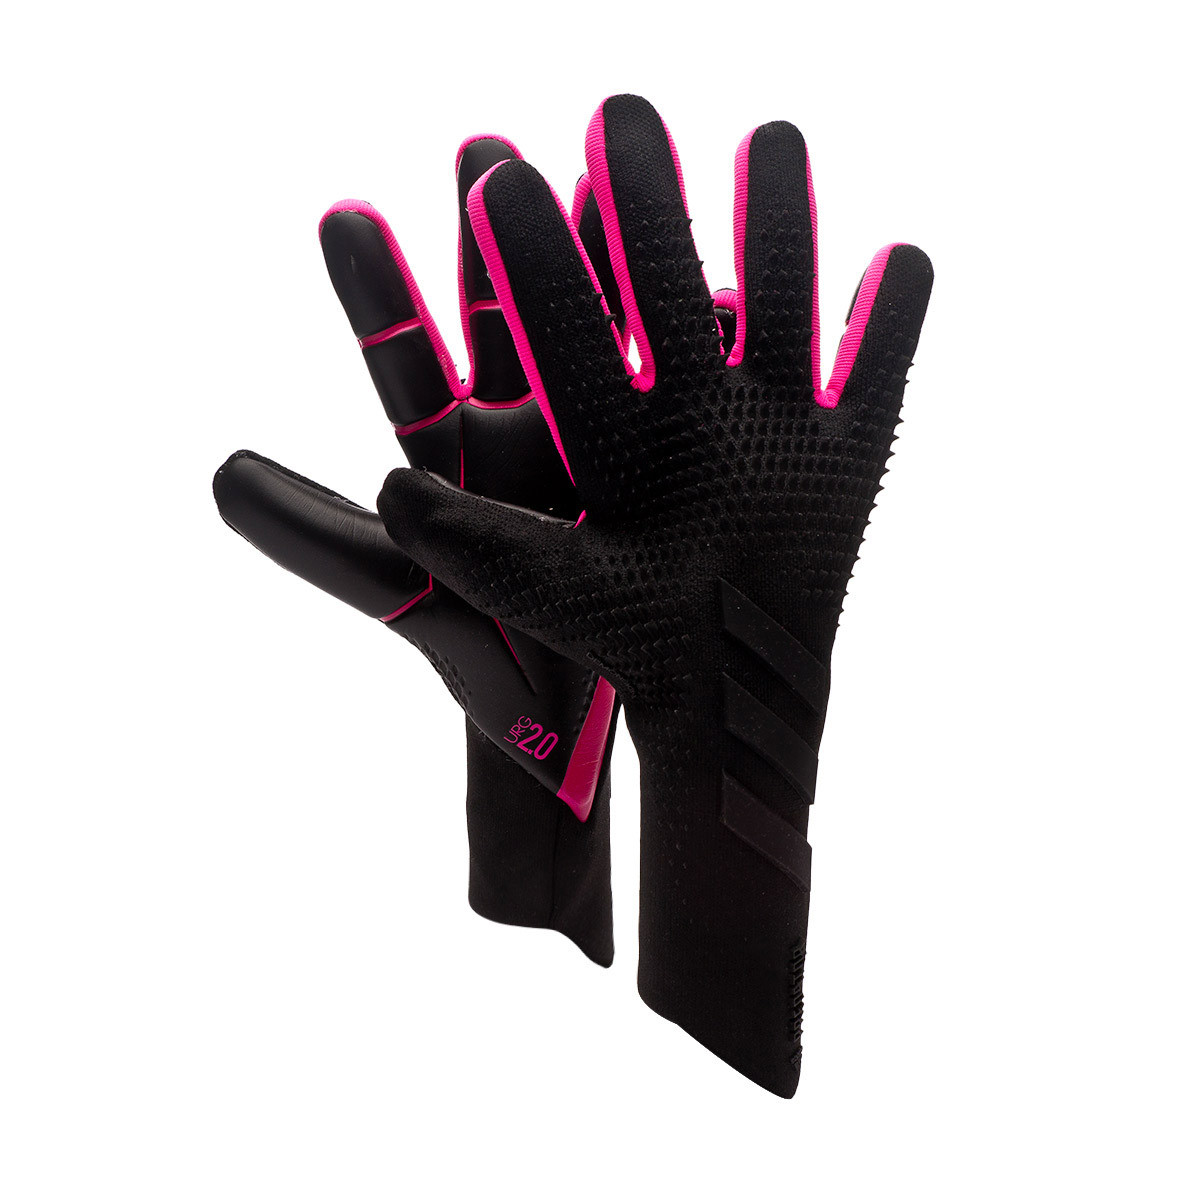 predator pro gloves pink